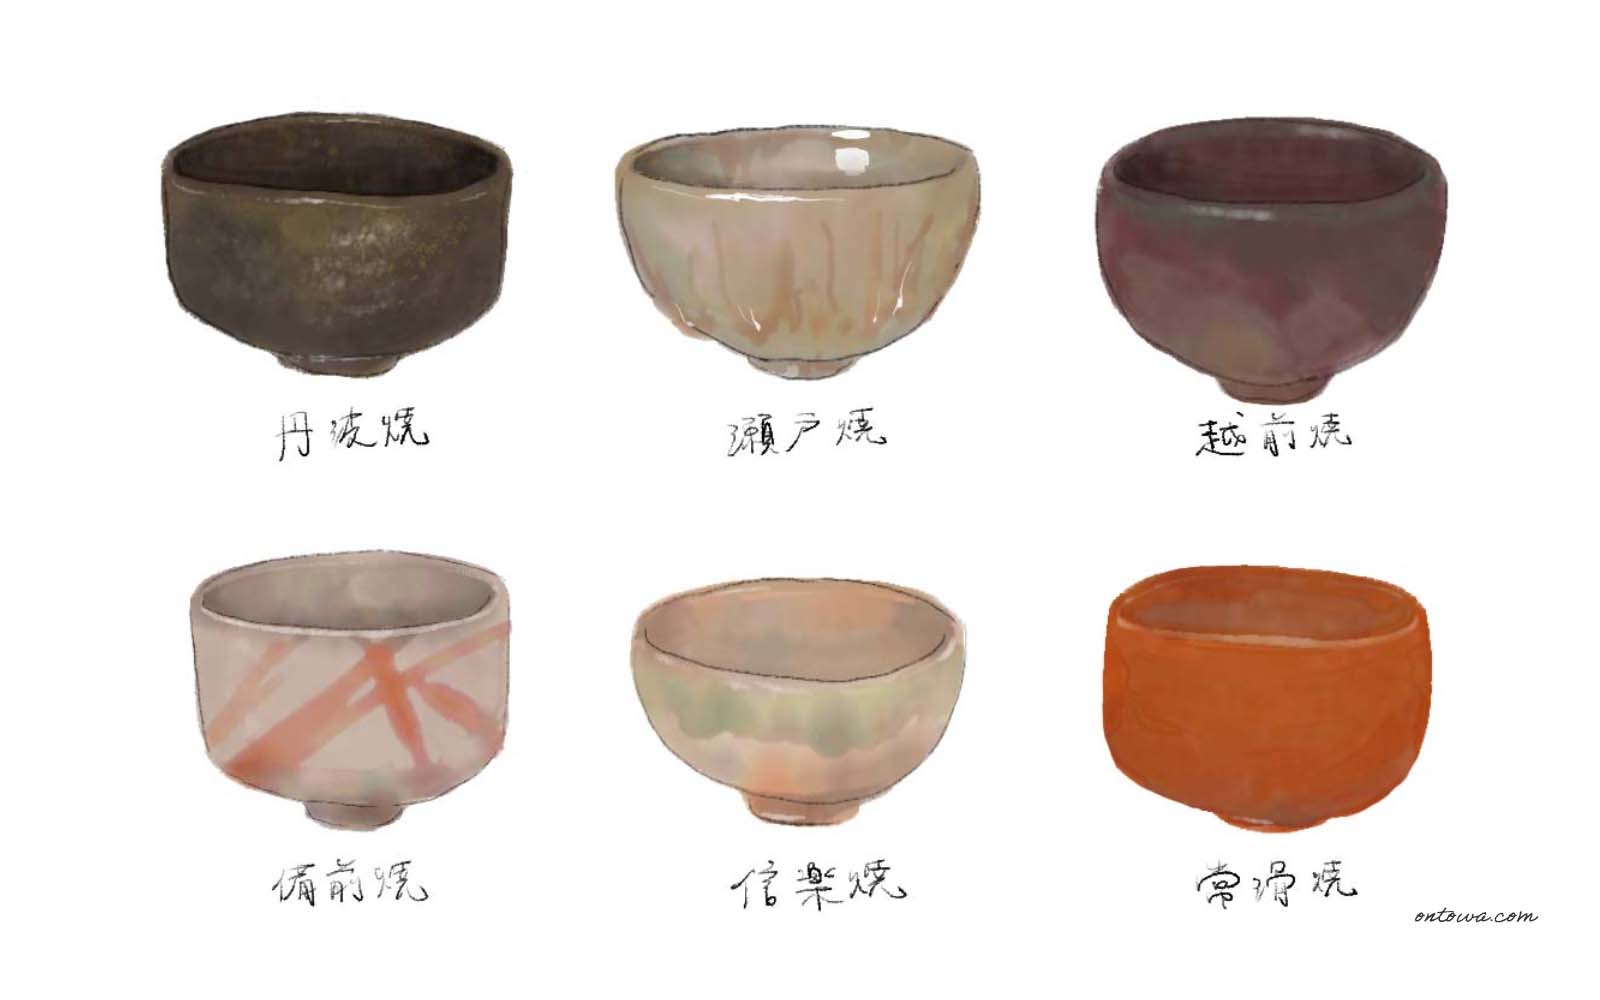 日本六古窯の焼きもの | 工芸と心地よい暮らしを探すメディア ontowa